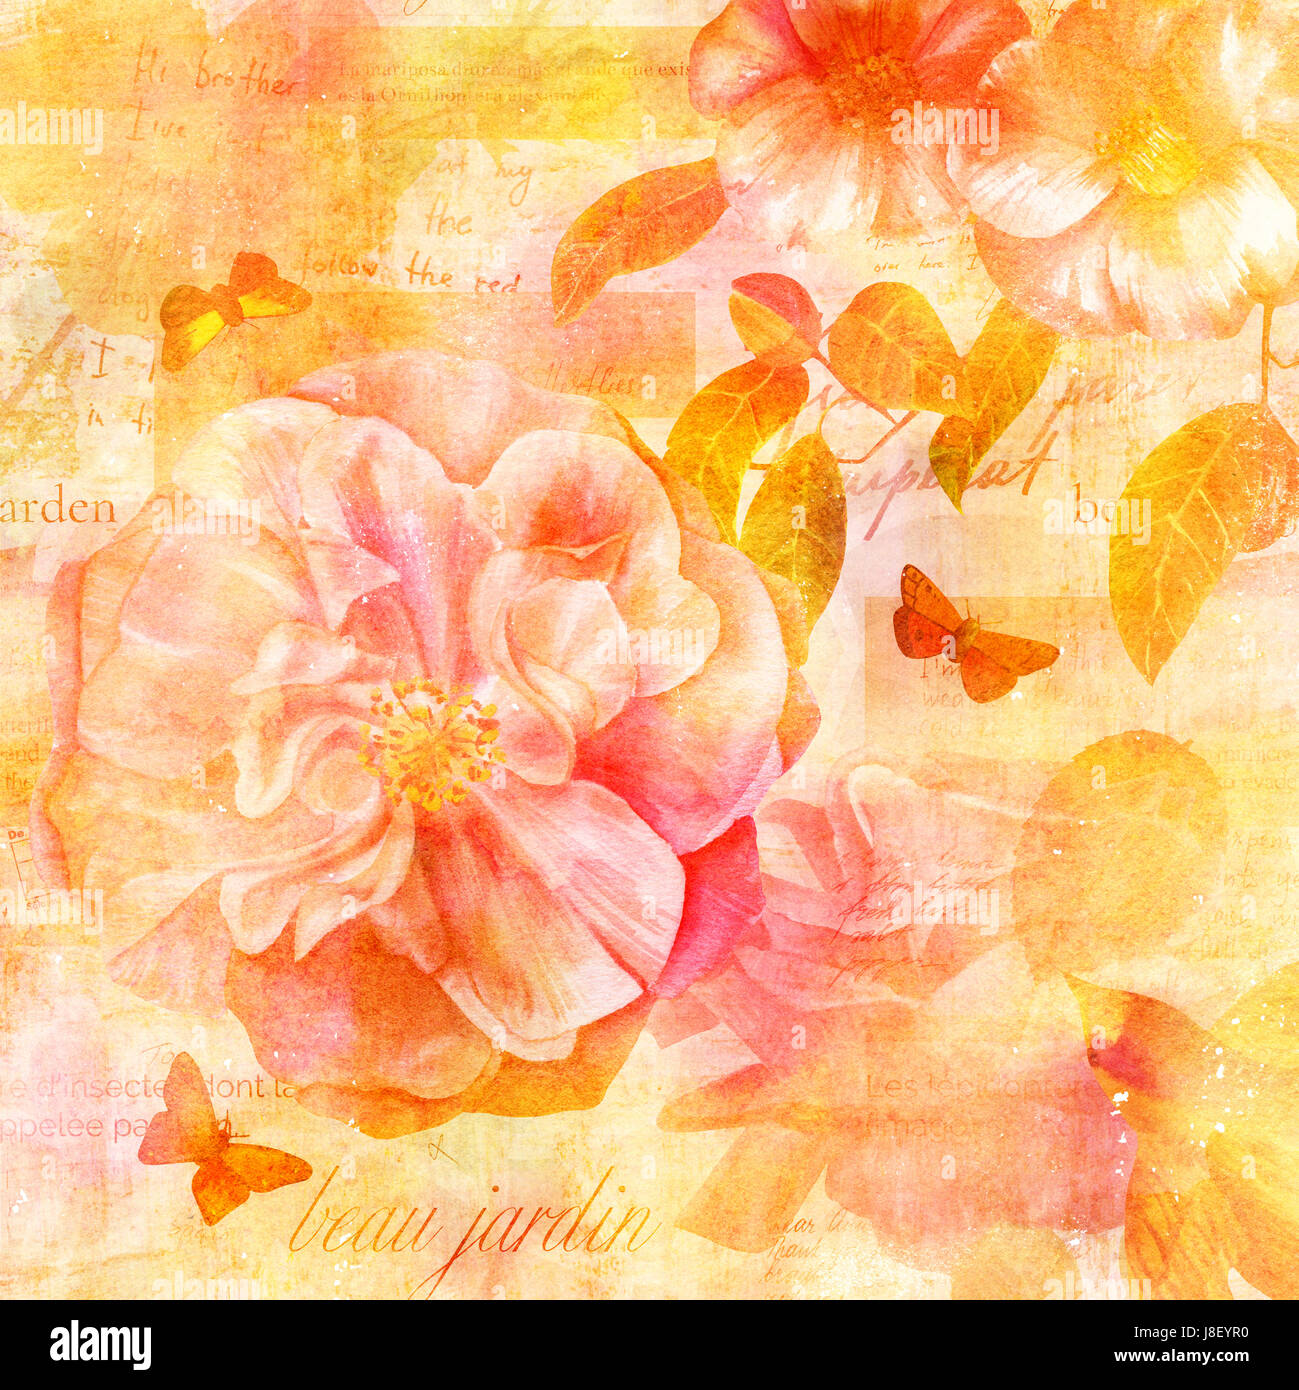 Vintage Collage mit Rose und Camellia Blumen, Schmetterlinge, goldener Vogel auf Hintergrund mit Fragmenten von Briefen und alte Papierstrukturen. Sichtbaren text Stockfoto